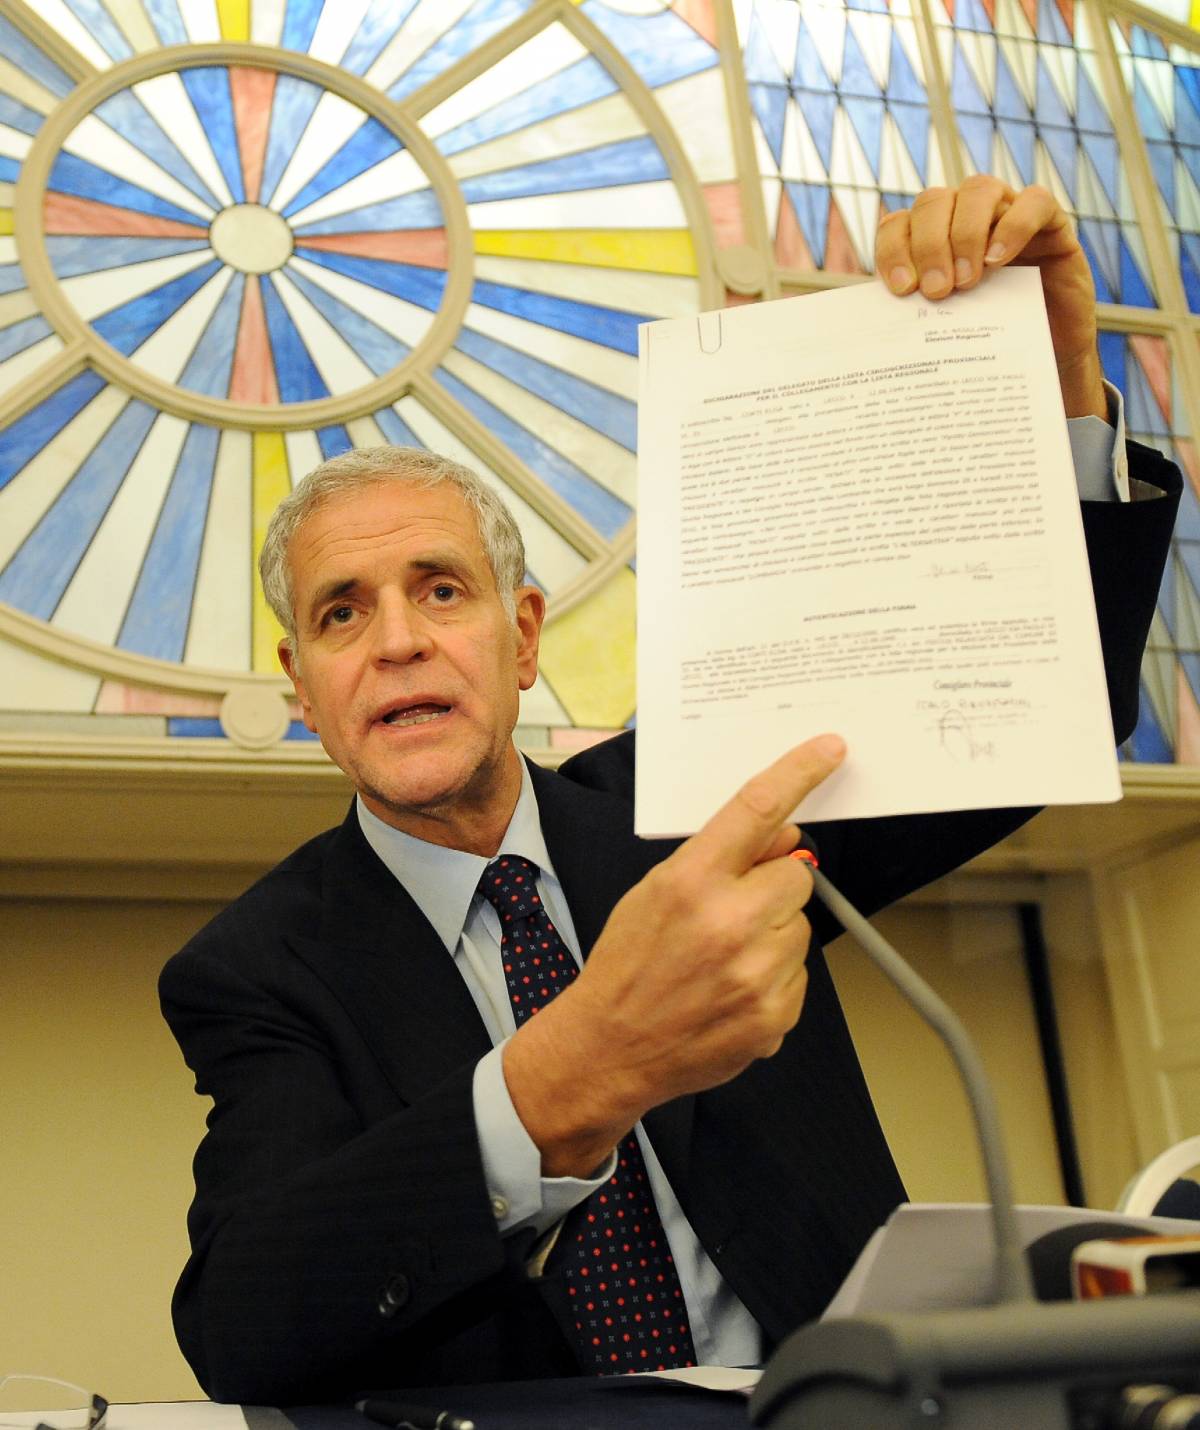 Liste, in Lombardia controlli a senso unico 
Accettate 824 firme del Pd irregolari